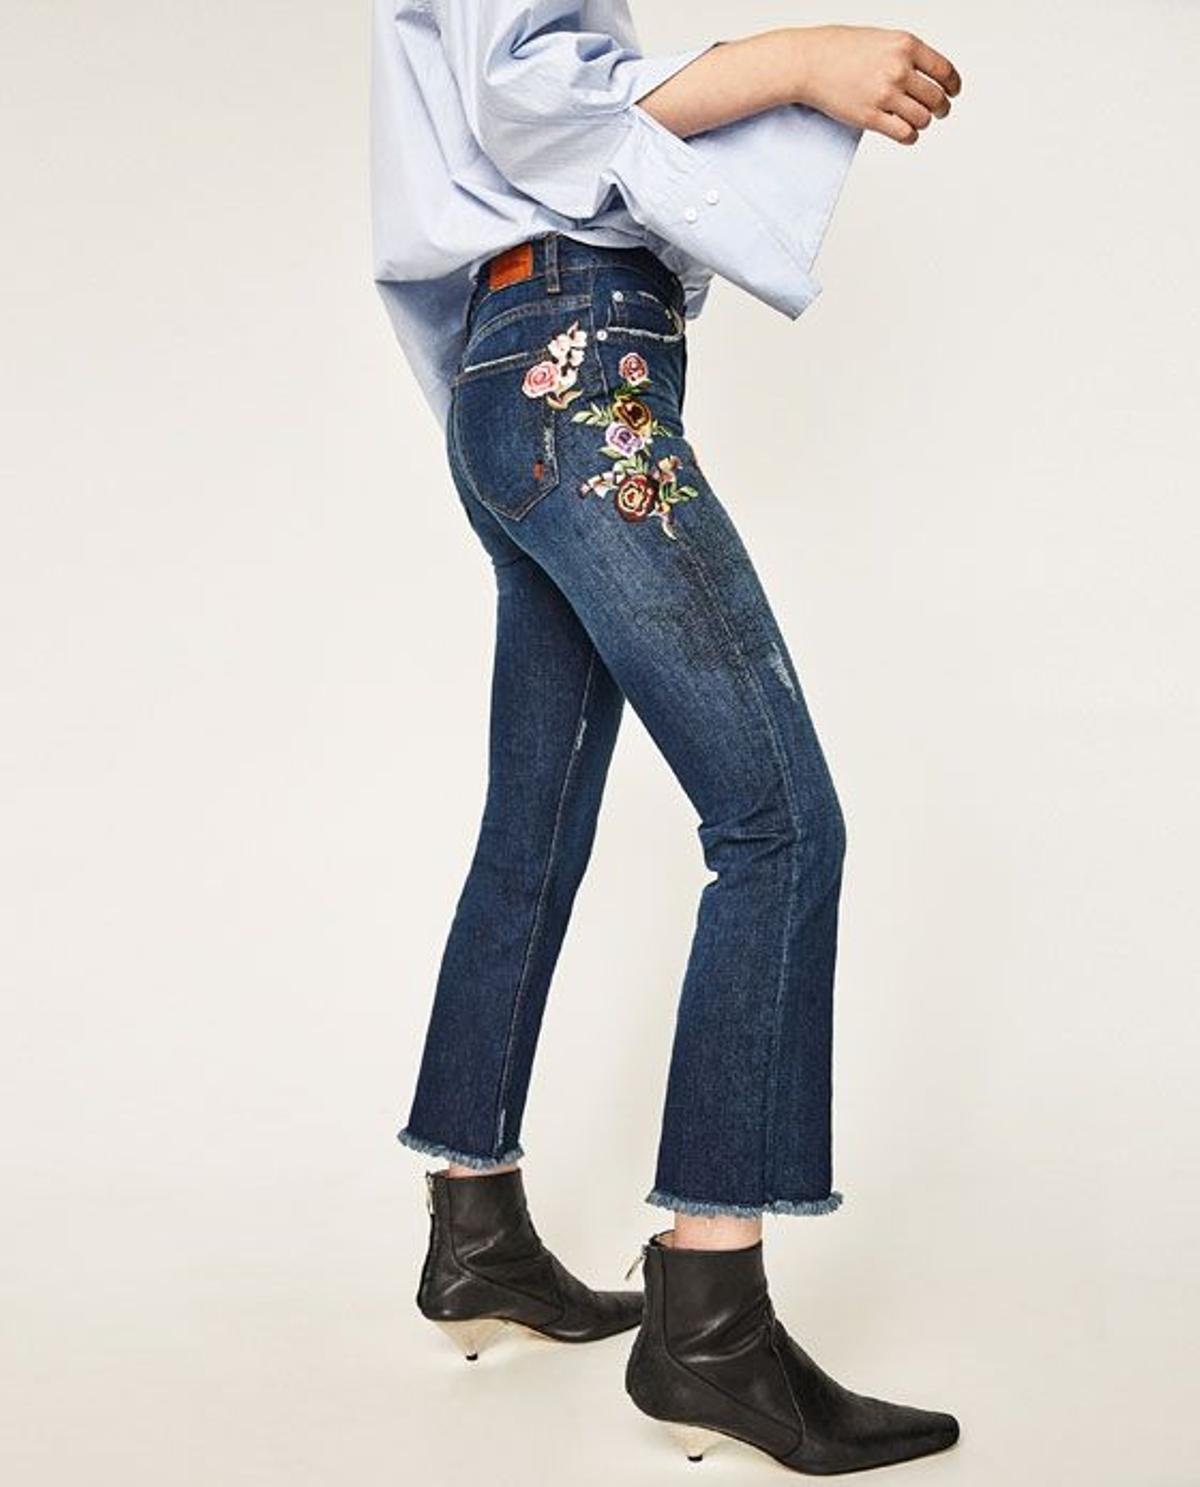 Rebajas 2017, jeans bordados de Zara (39,95€)